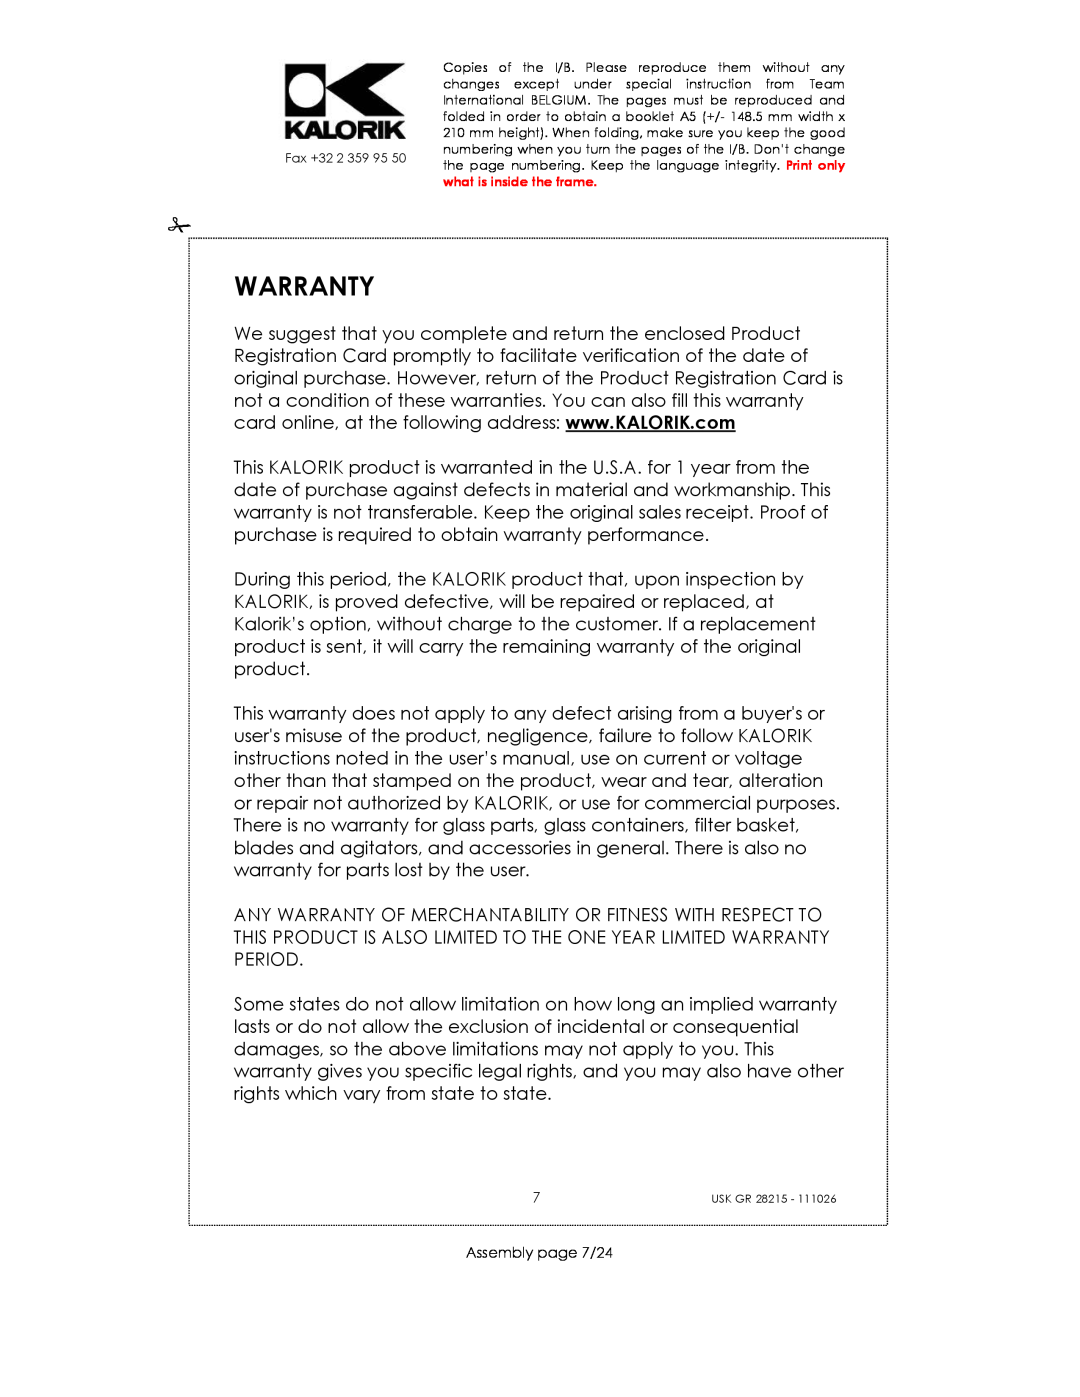 Kalorik USK GR 28215 manual Warranty, Assembly page 7/24 